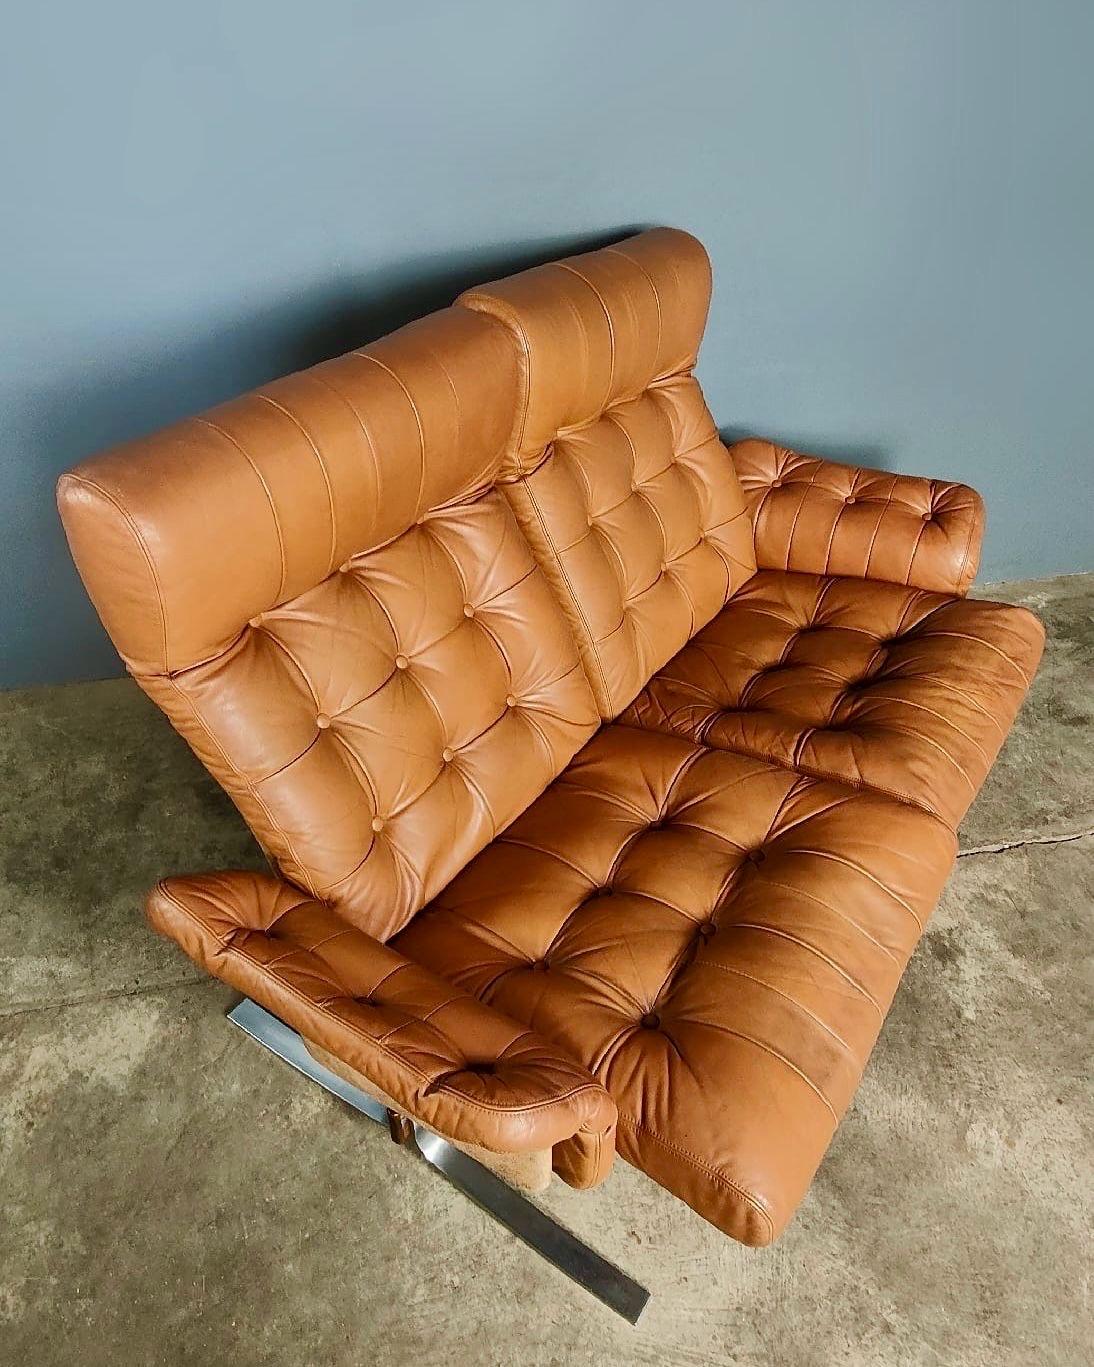 Neuer Bestand ✅

Zweisitziges Sofa 